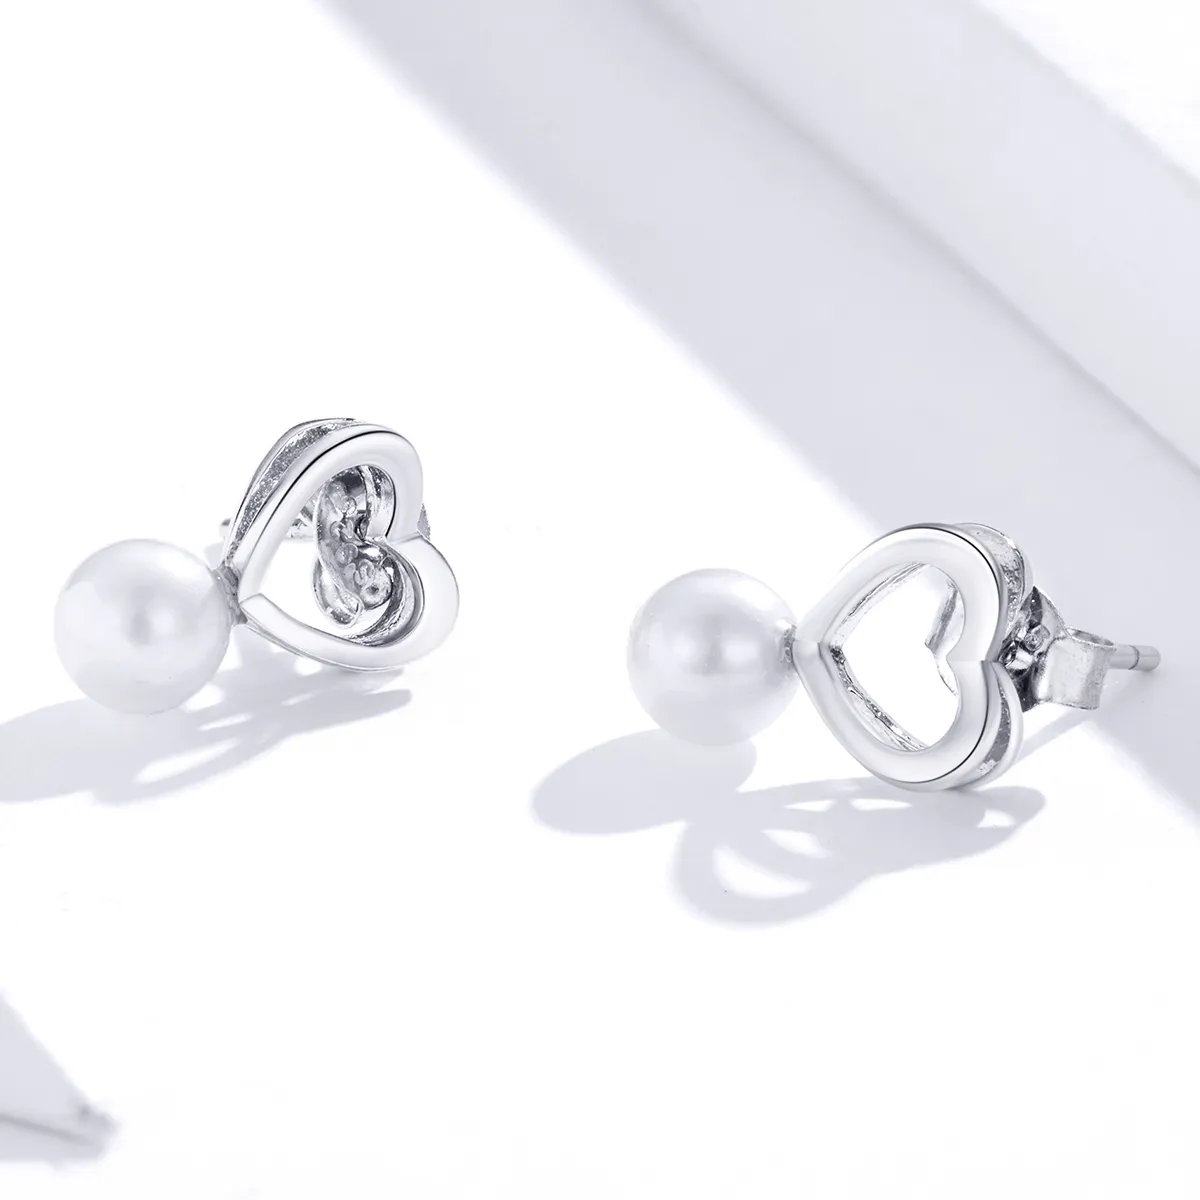 Pandora Style Silver Pearl Drop Stud Earrings - SCE869